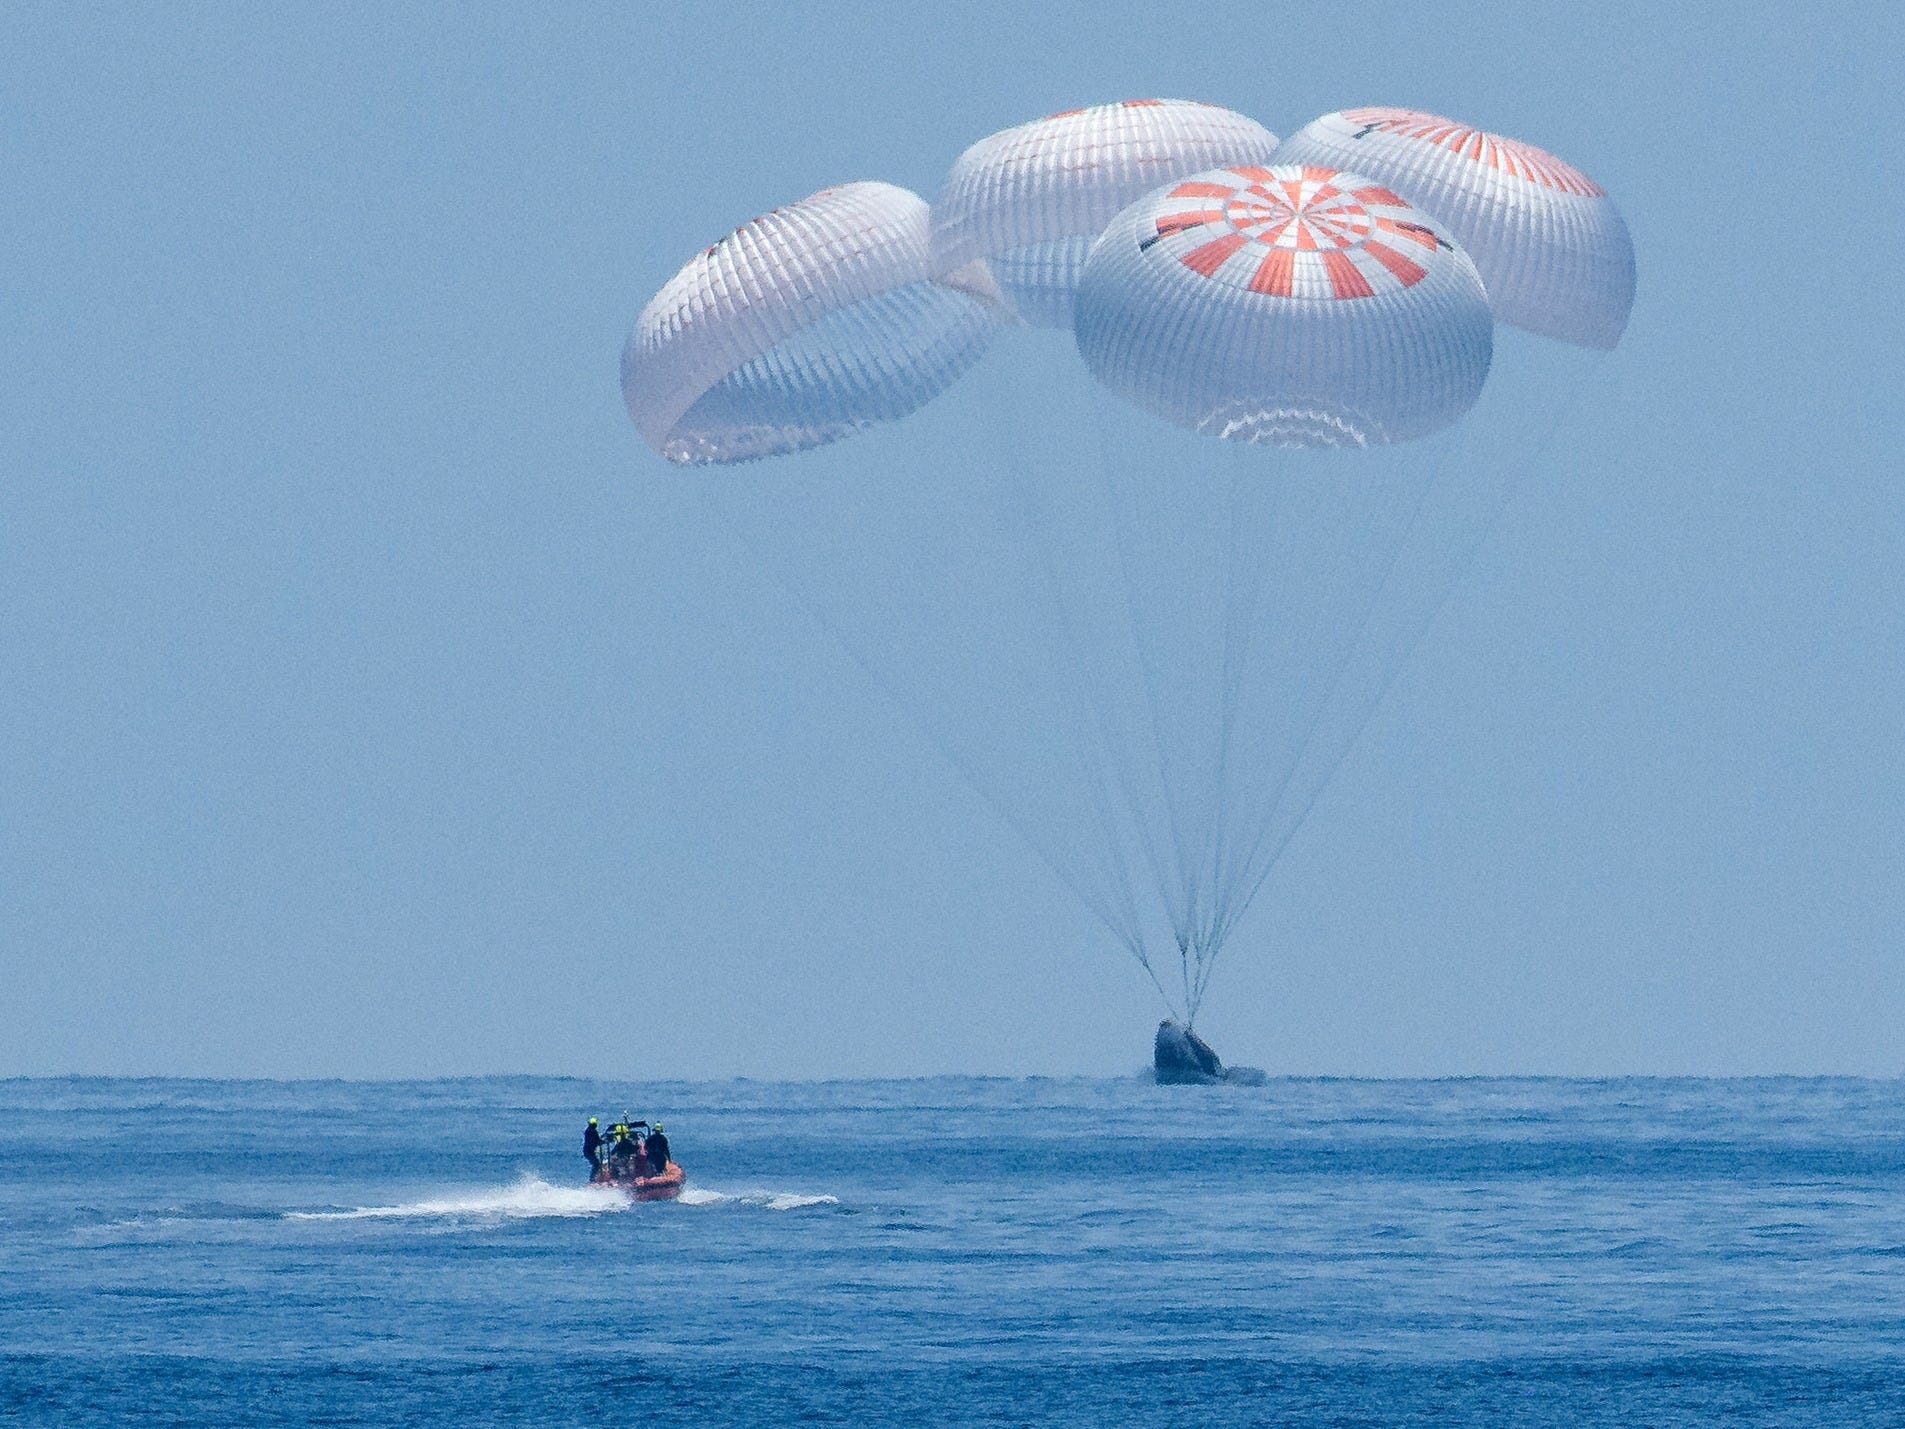 De SpaceX Crew Dragon Endeavour is zondag veilig neergekomen in de Golf van Mexico. Dat gebeurde voor de kust van Pensacola in de staat Florida.